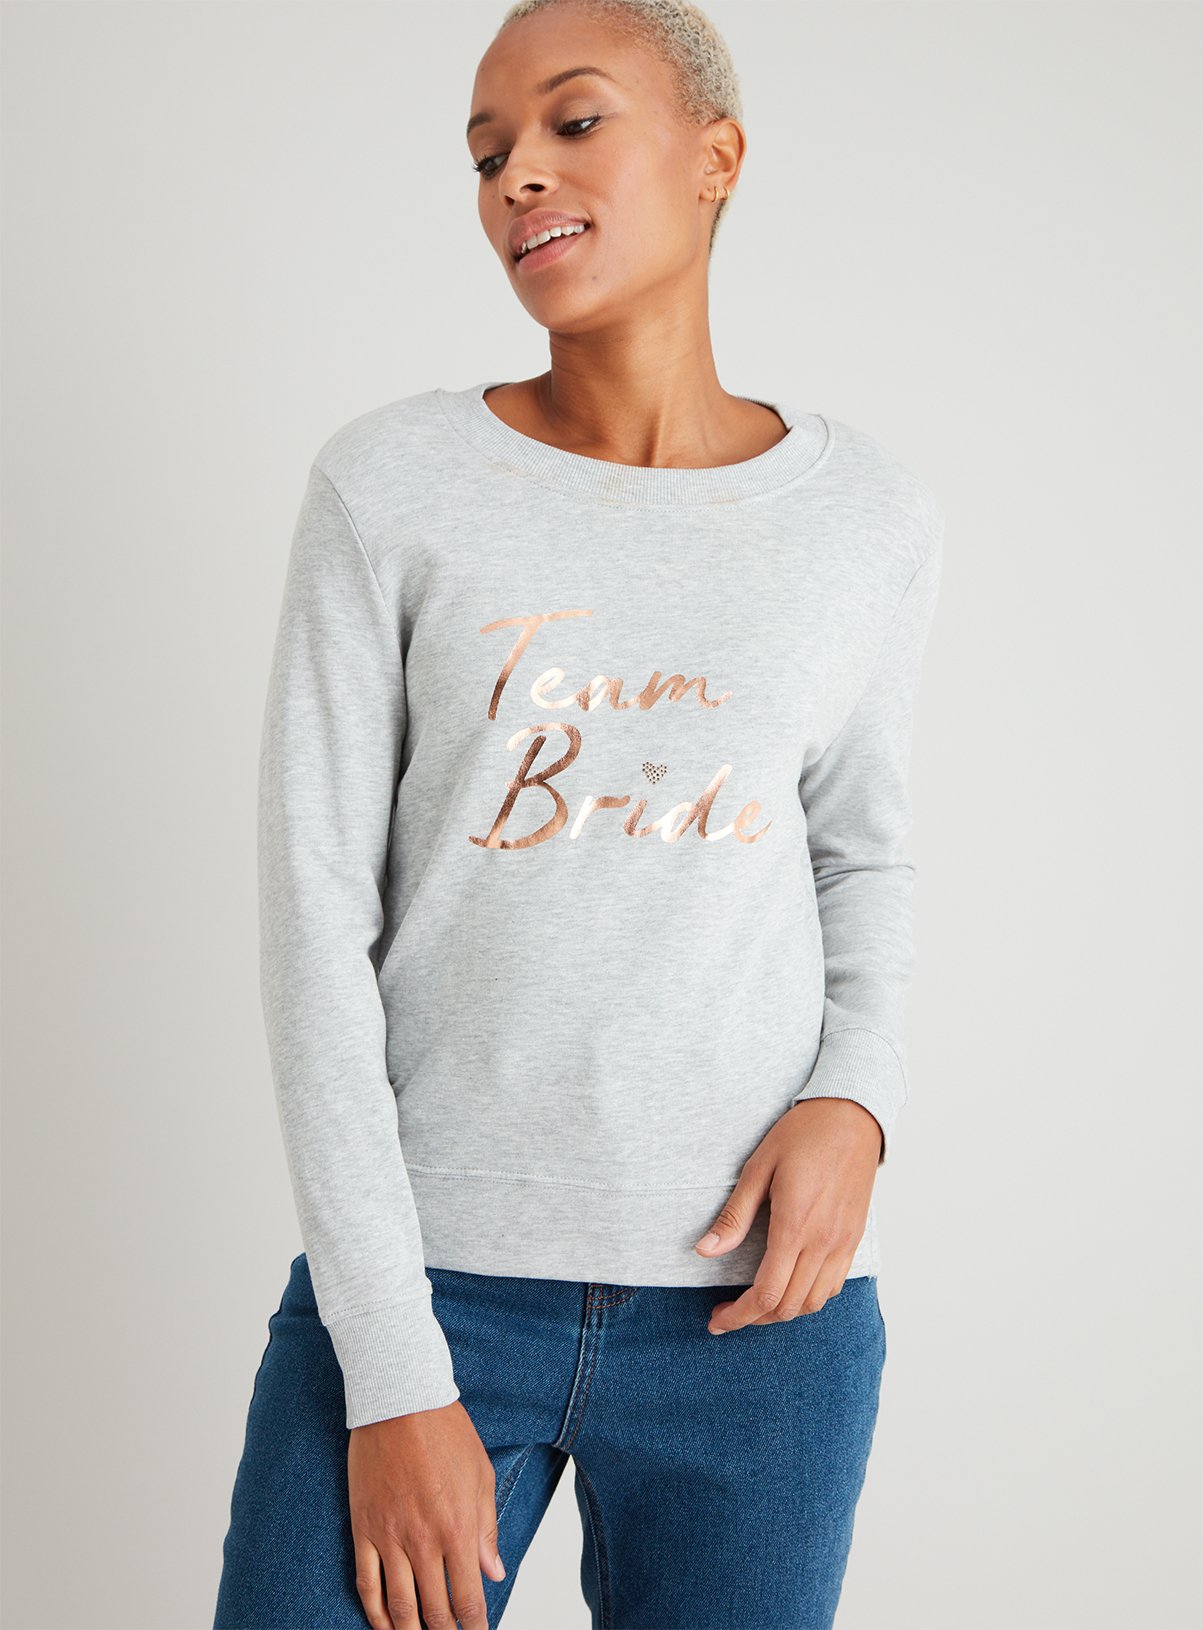 Grey 'Team Bride' Slogan Sweatshirt Review